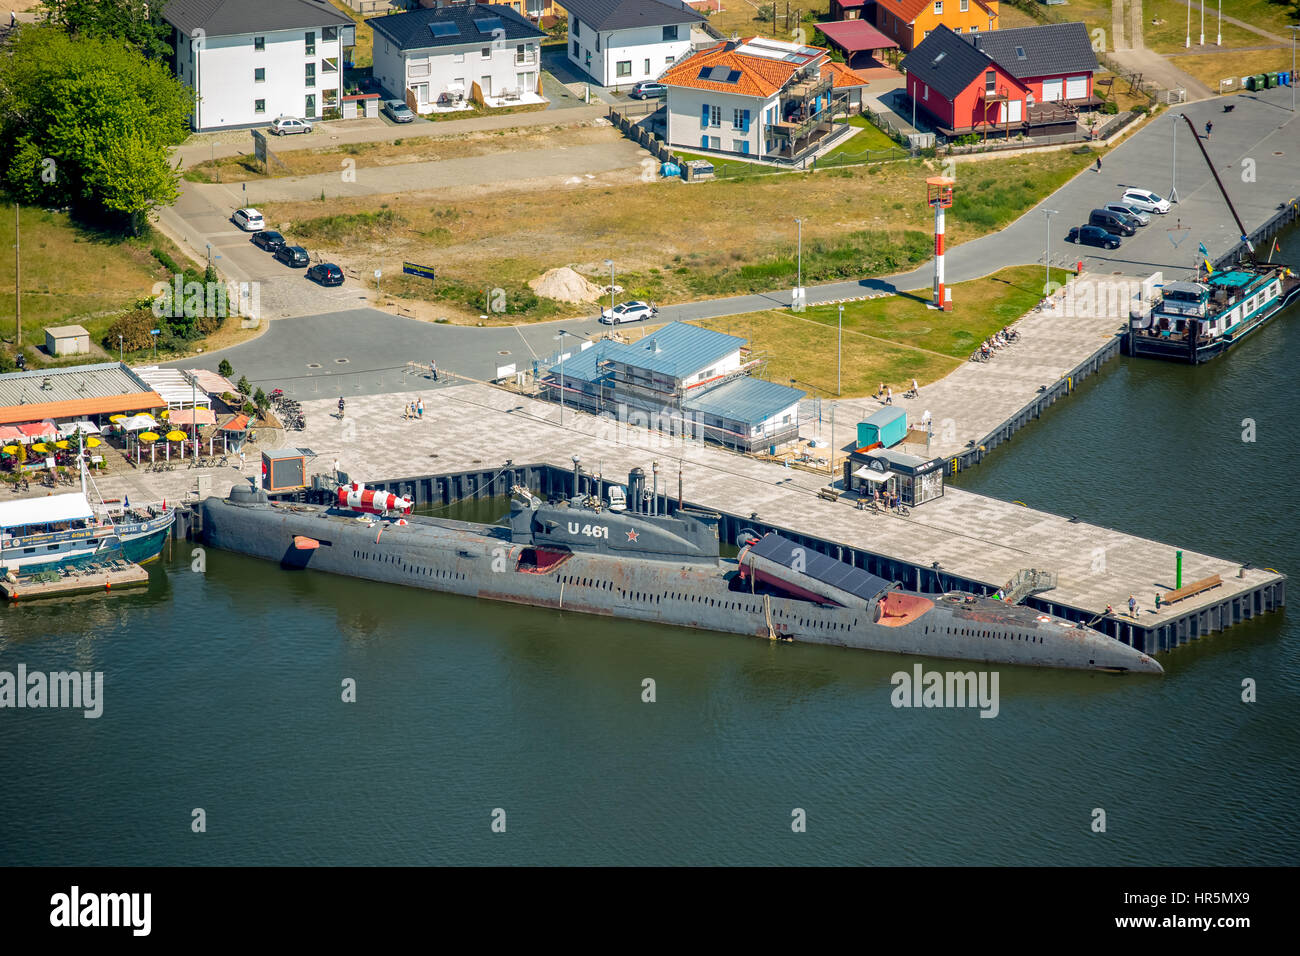 Storico e Museo Tecnico Peenemünde (HTM), Sottomarino U-461, progetto sovietico 651 sottomarino russo K-24, Juliett-class submarine, isola di Usedom, Foto Stock